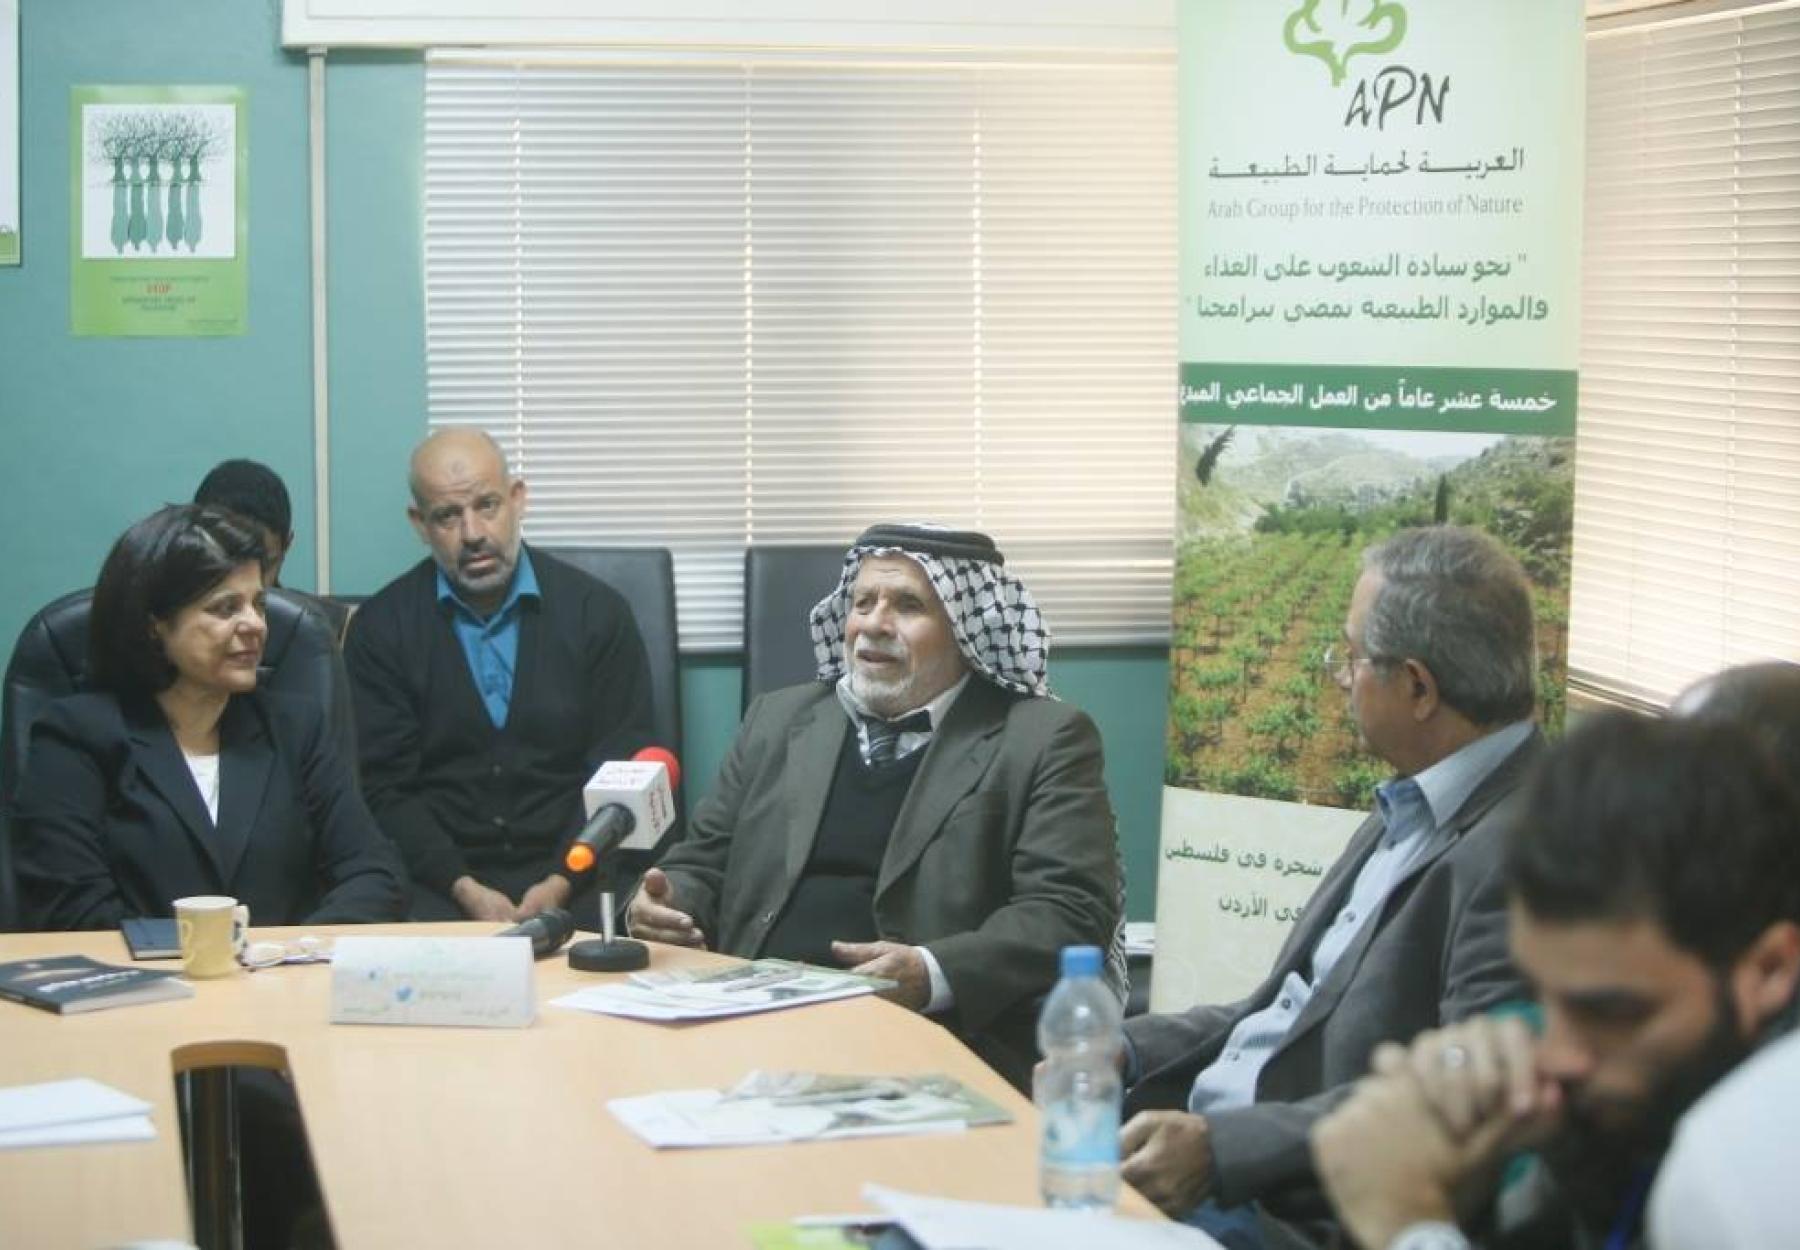 حضور كثيف لمؤتمرالعربية لحماية الطبيعة  الصحفي السنوي